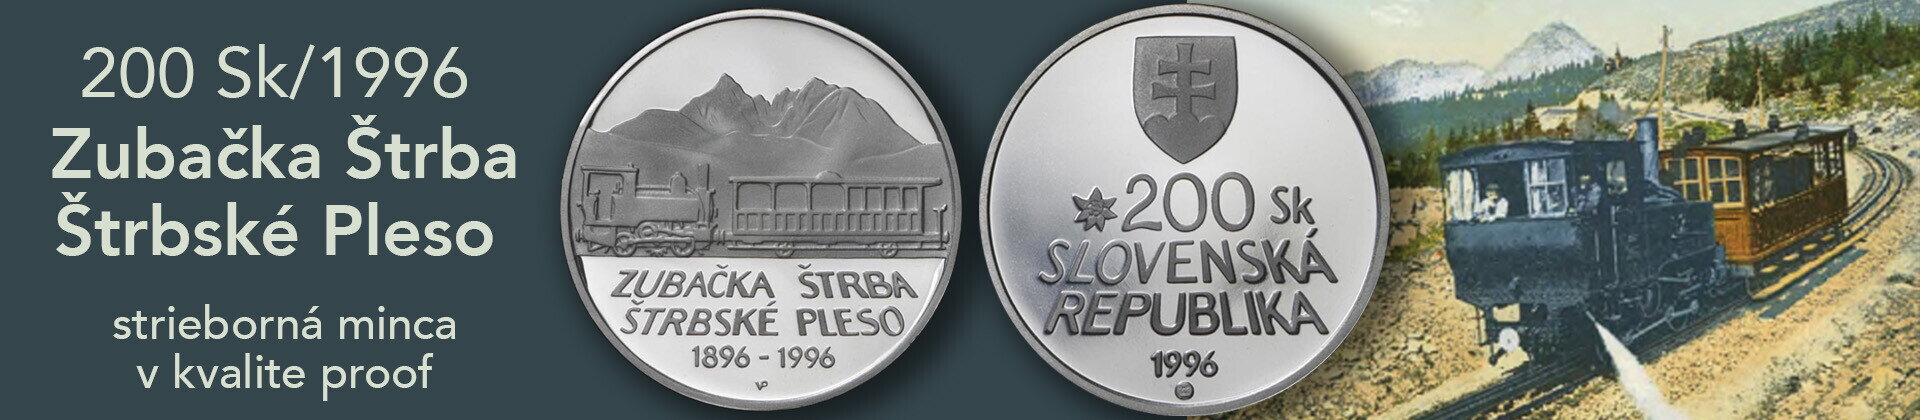 200 Sk/1996 Zubačka Štrba - Štrbské Pleso